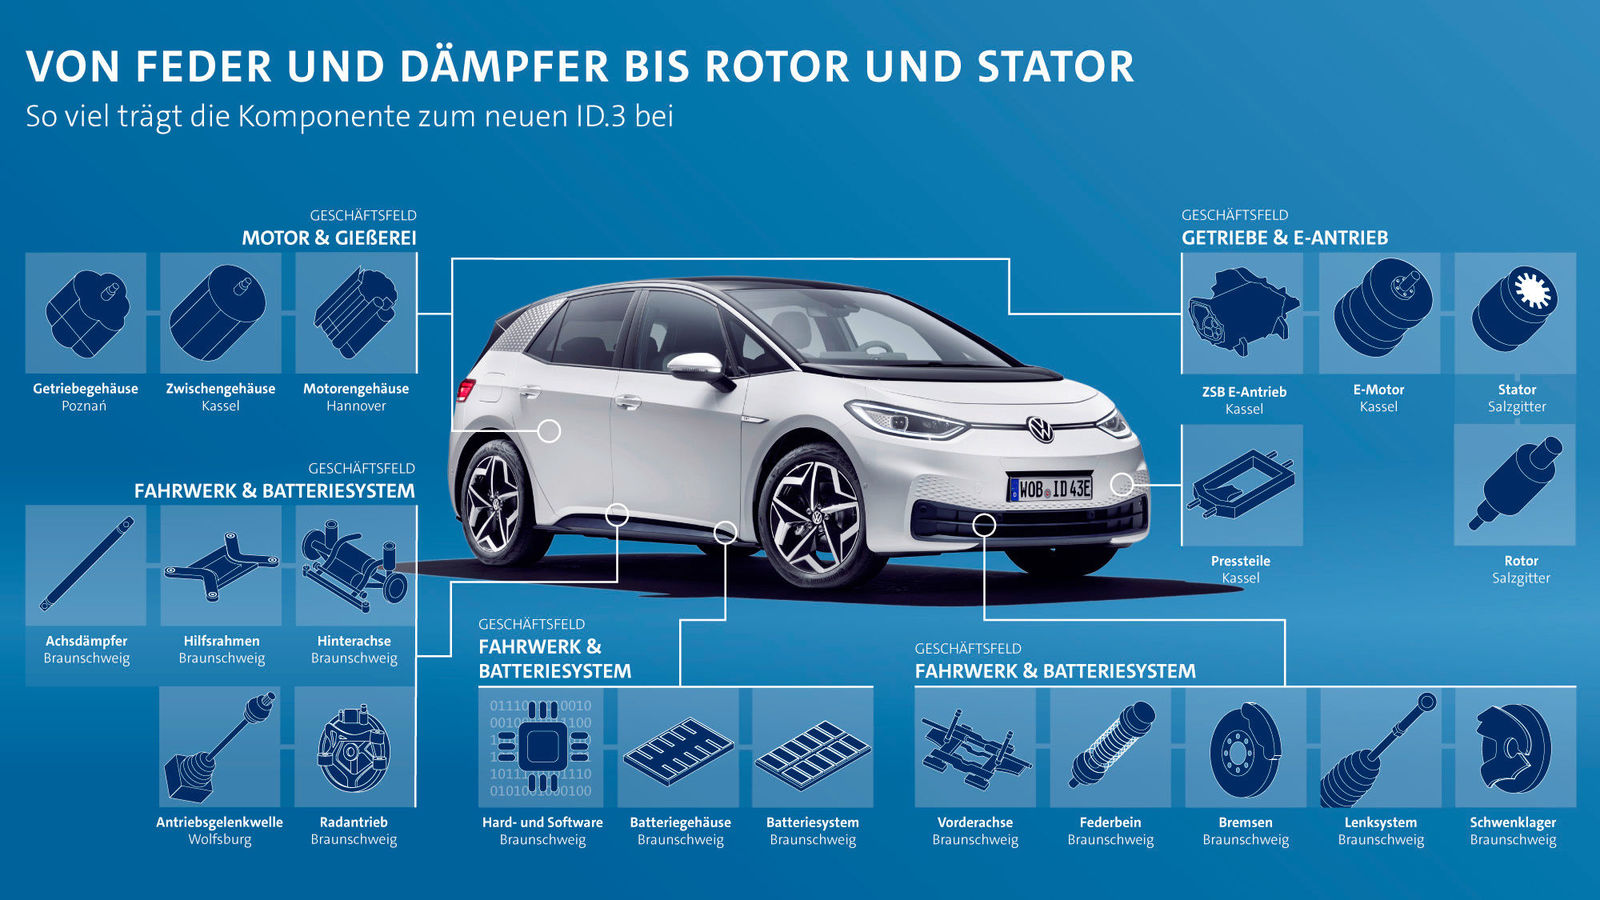 Diese Bauteile liefert die Volkswagen Komponente für den ID.3